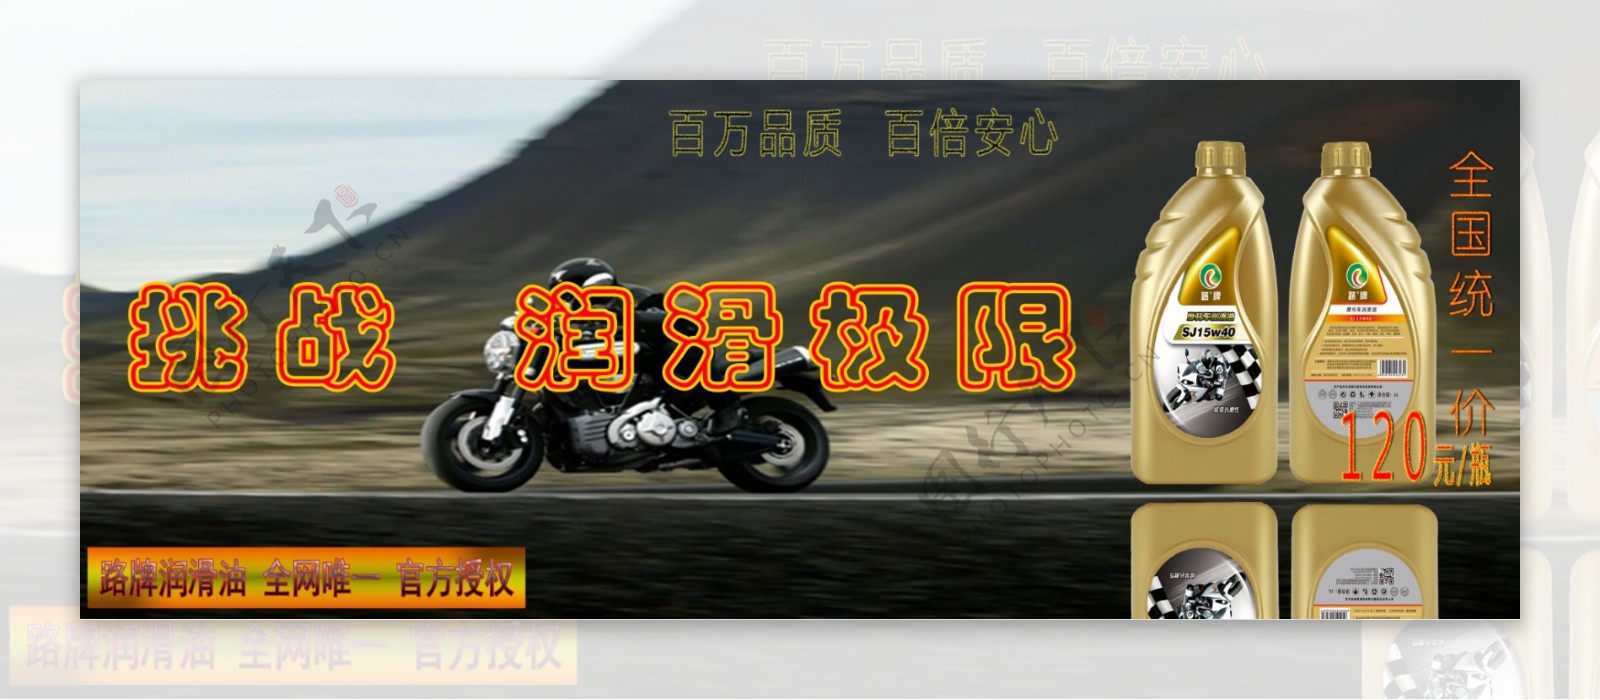 路牌机油广告摩托车机油